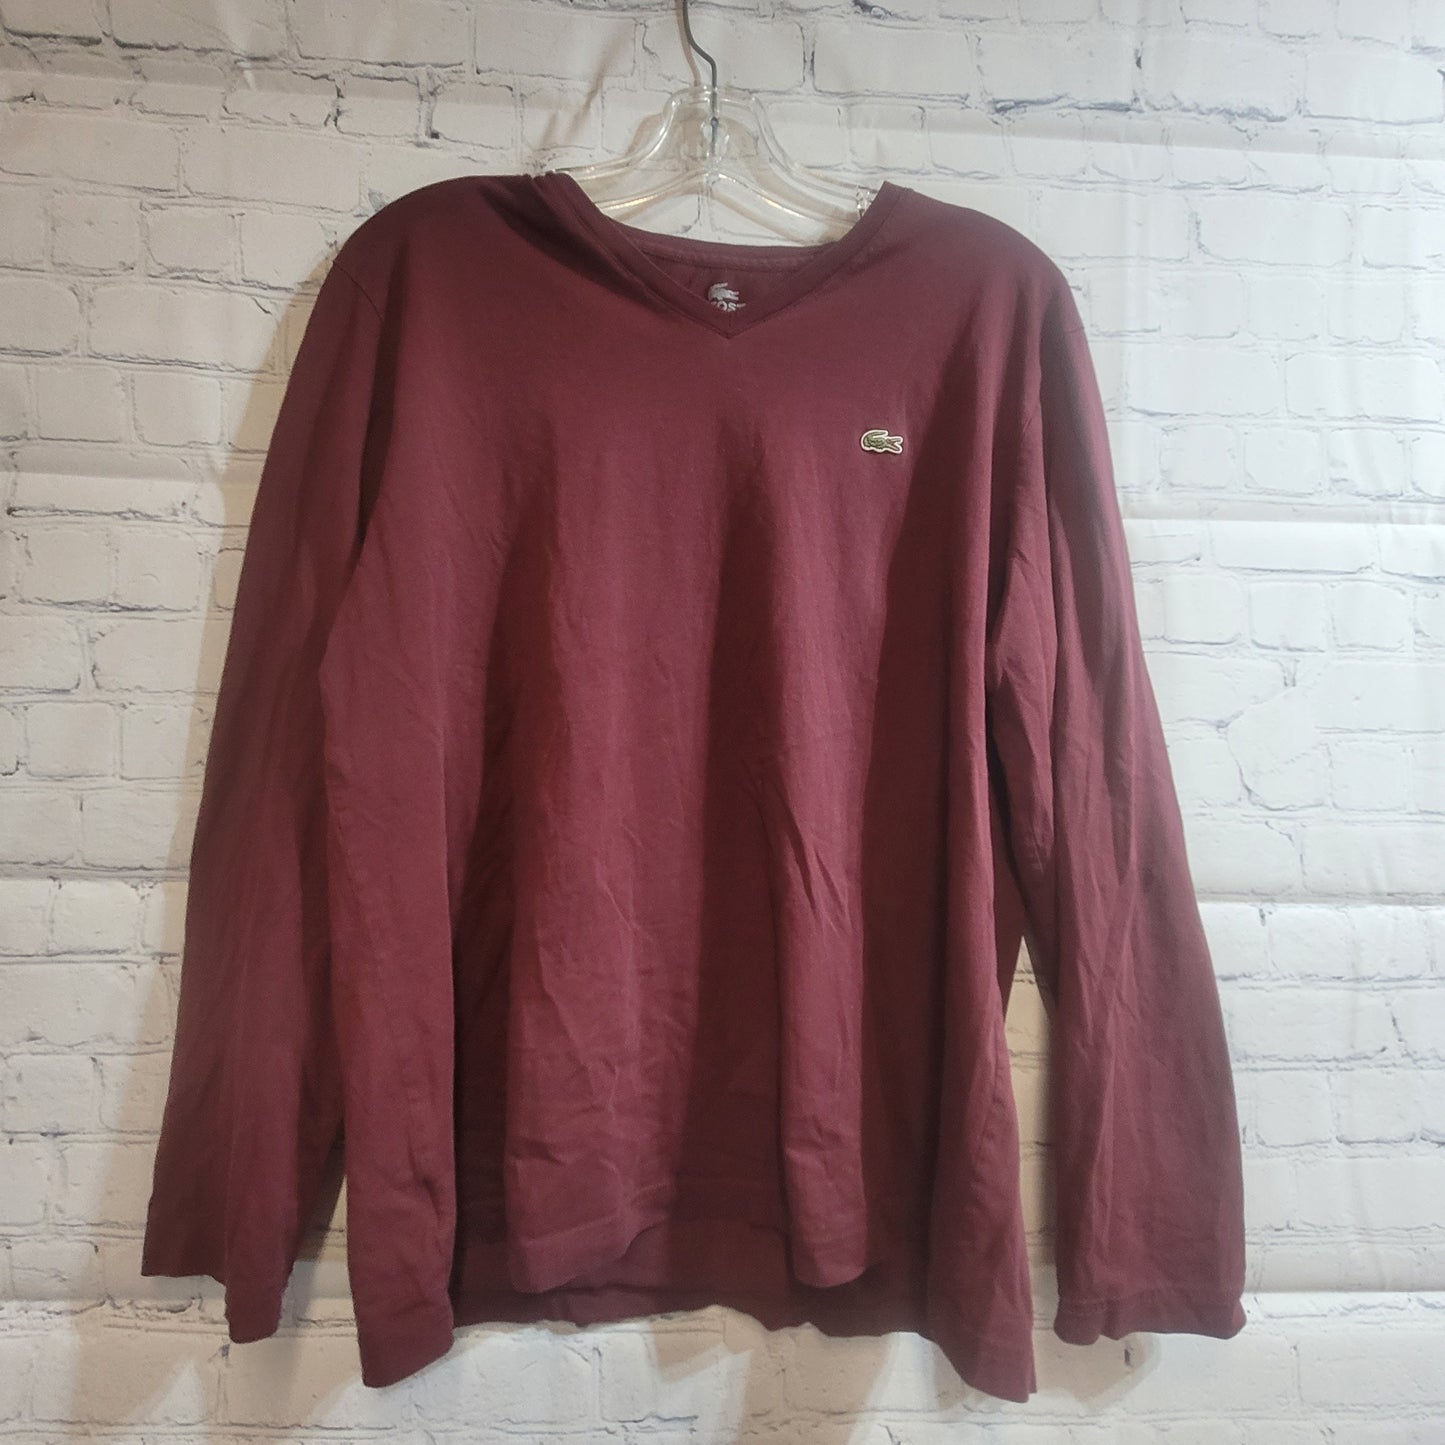 Lacoste Long Sleeve Shirt Burgundy - Large